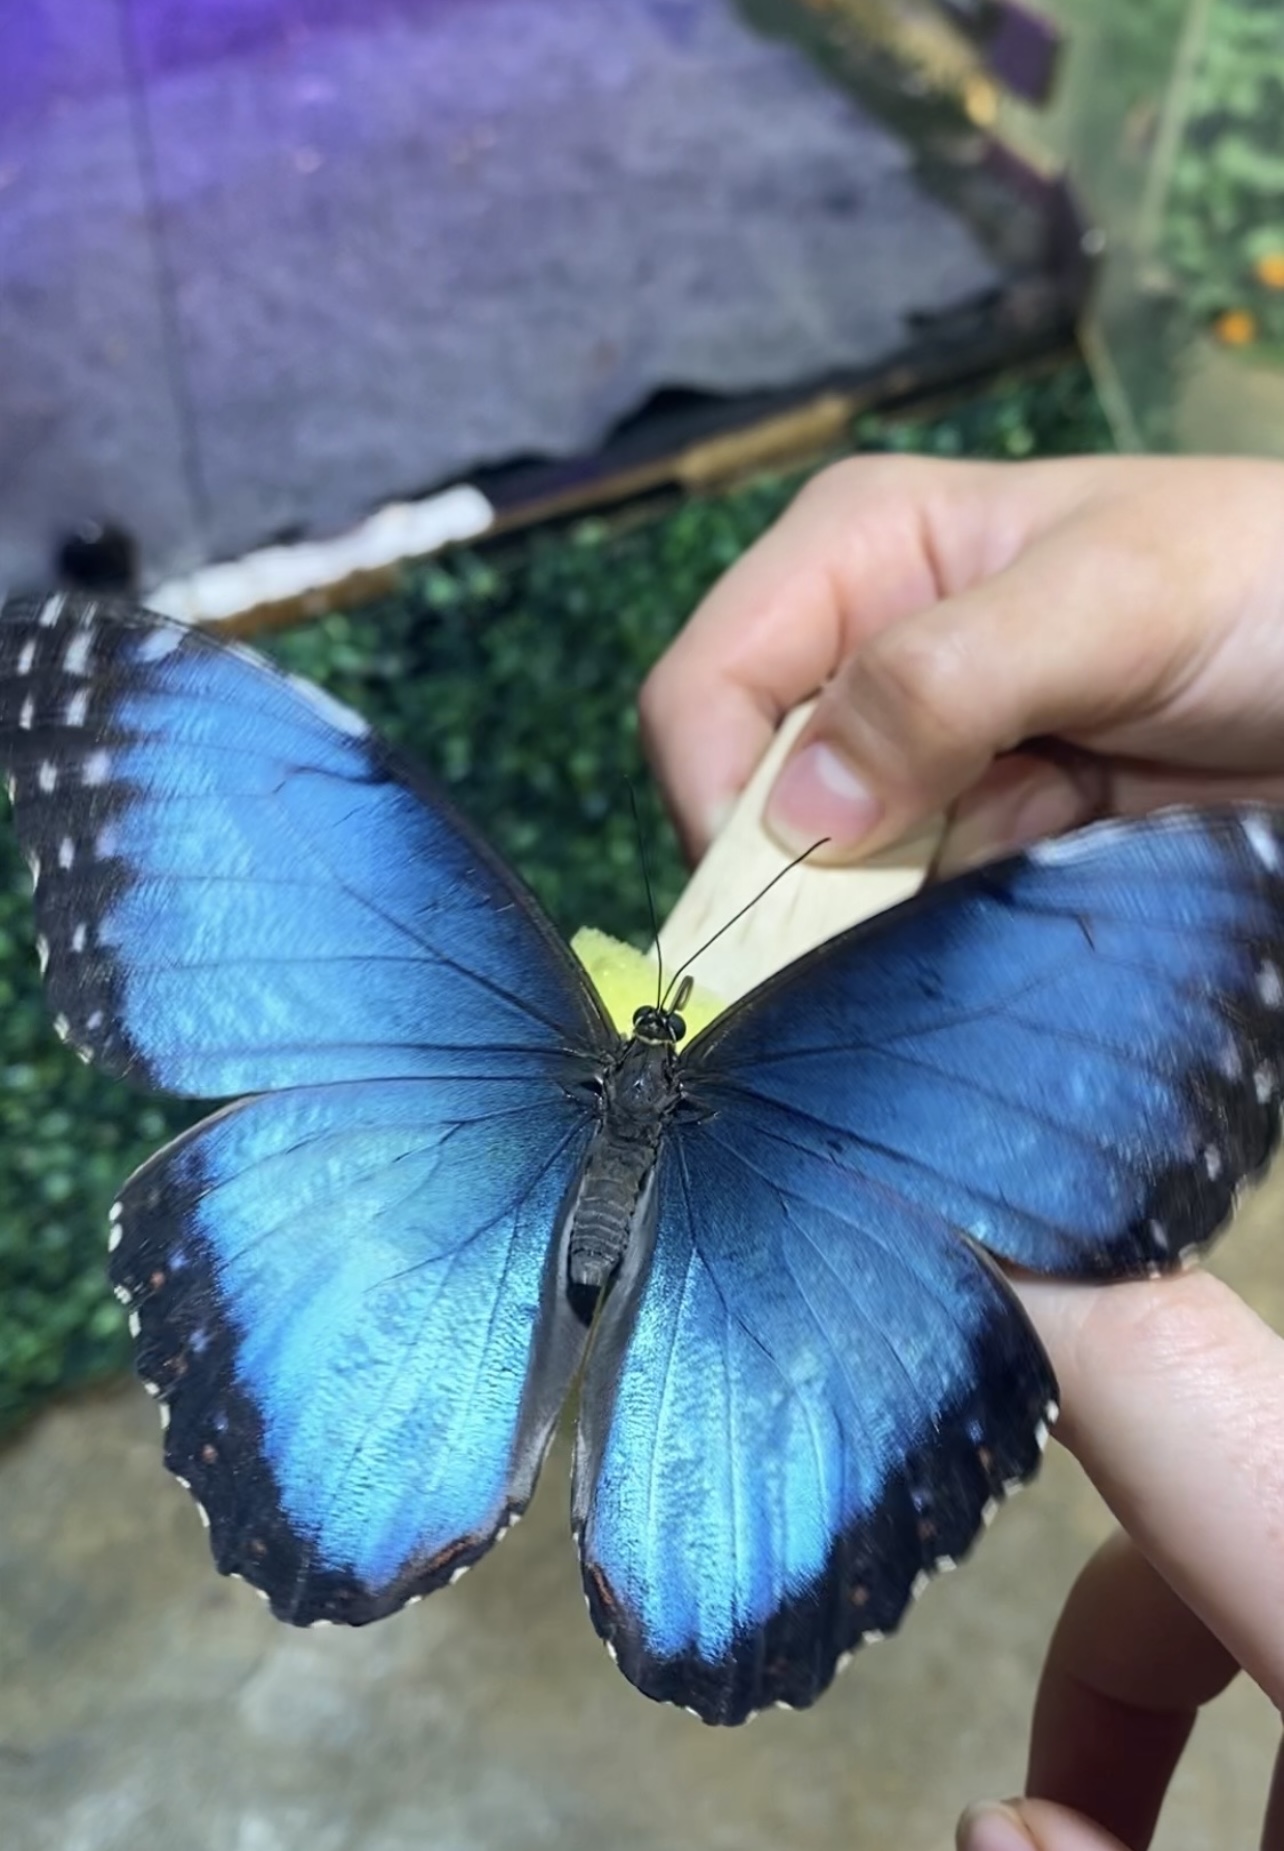 Une personne tient un papillon bleu et blanc, affichant un aspect de fascination culturelle.